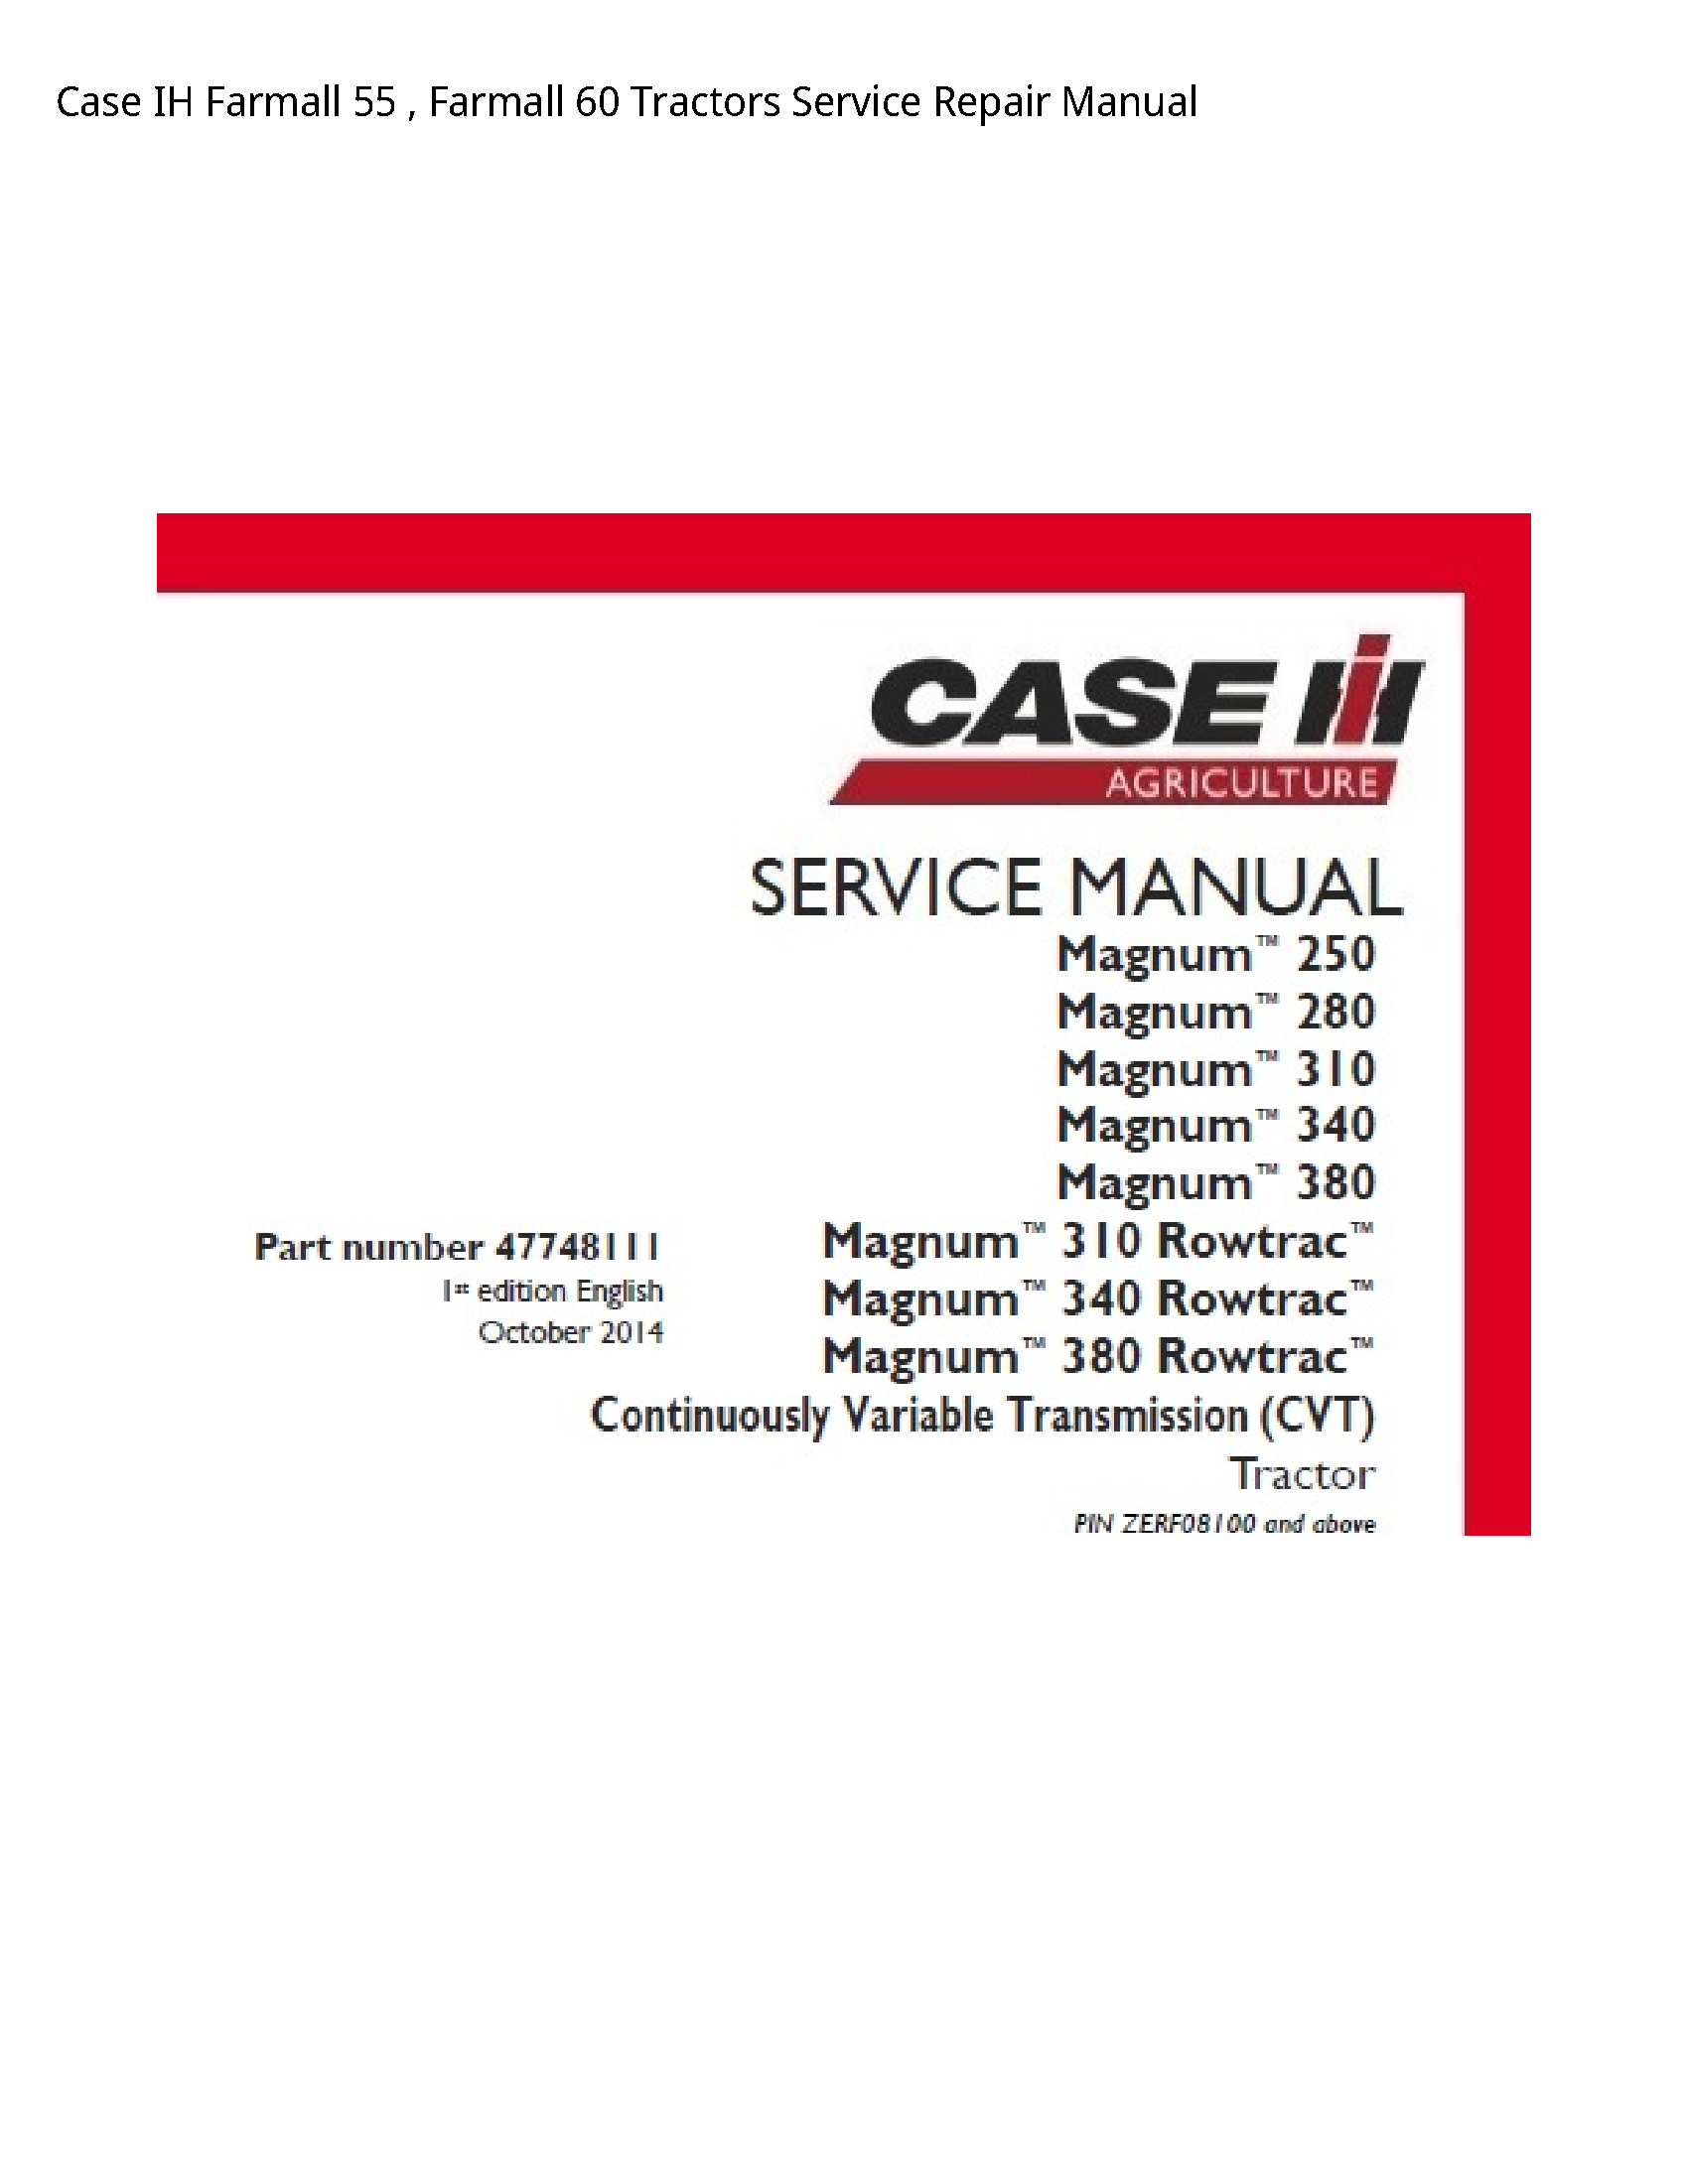 Case/Case IH 55 IH Farmall Farmall Tractors manual